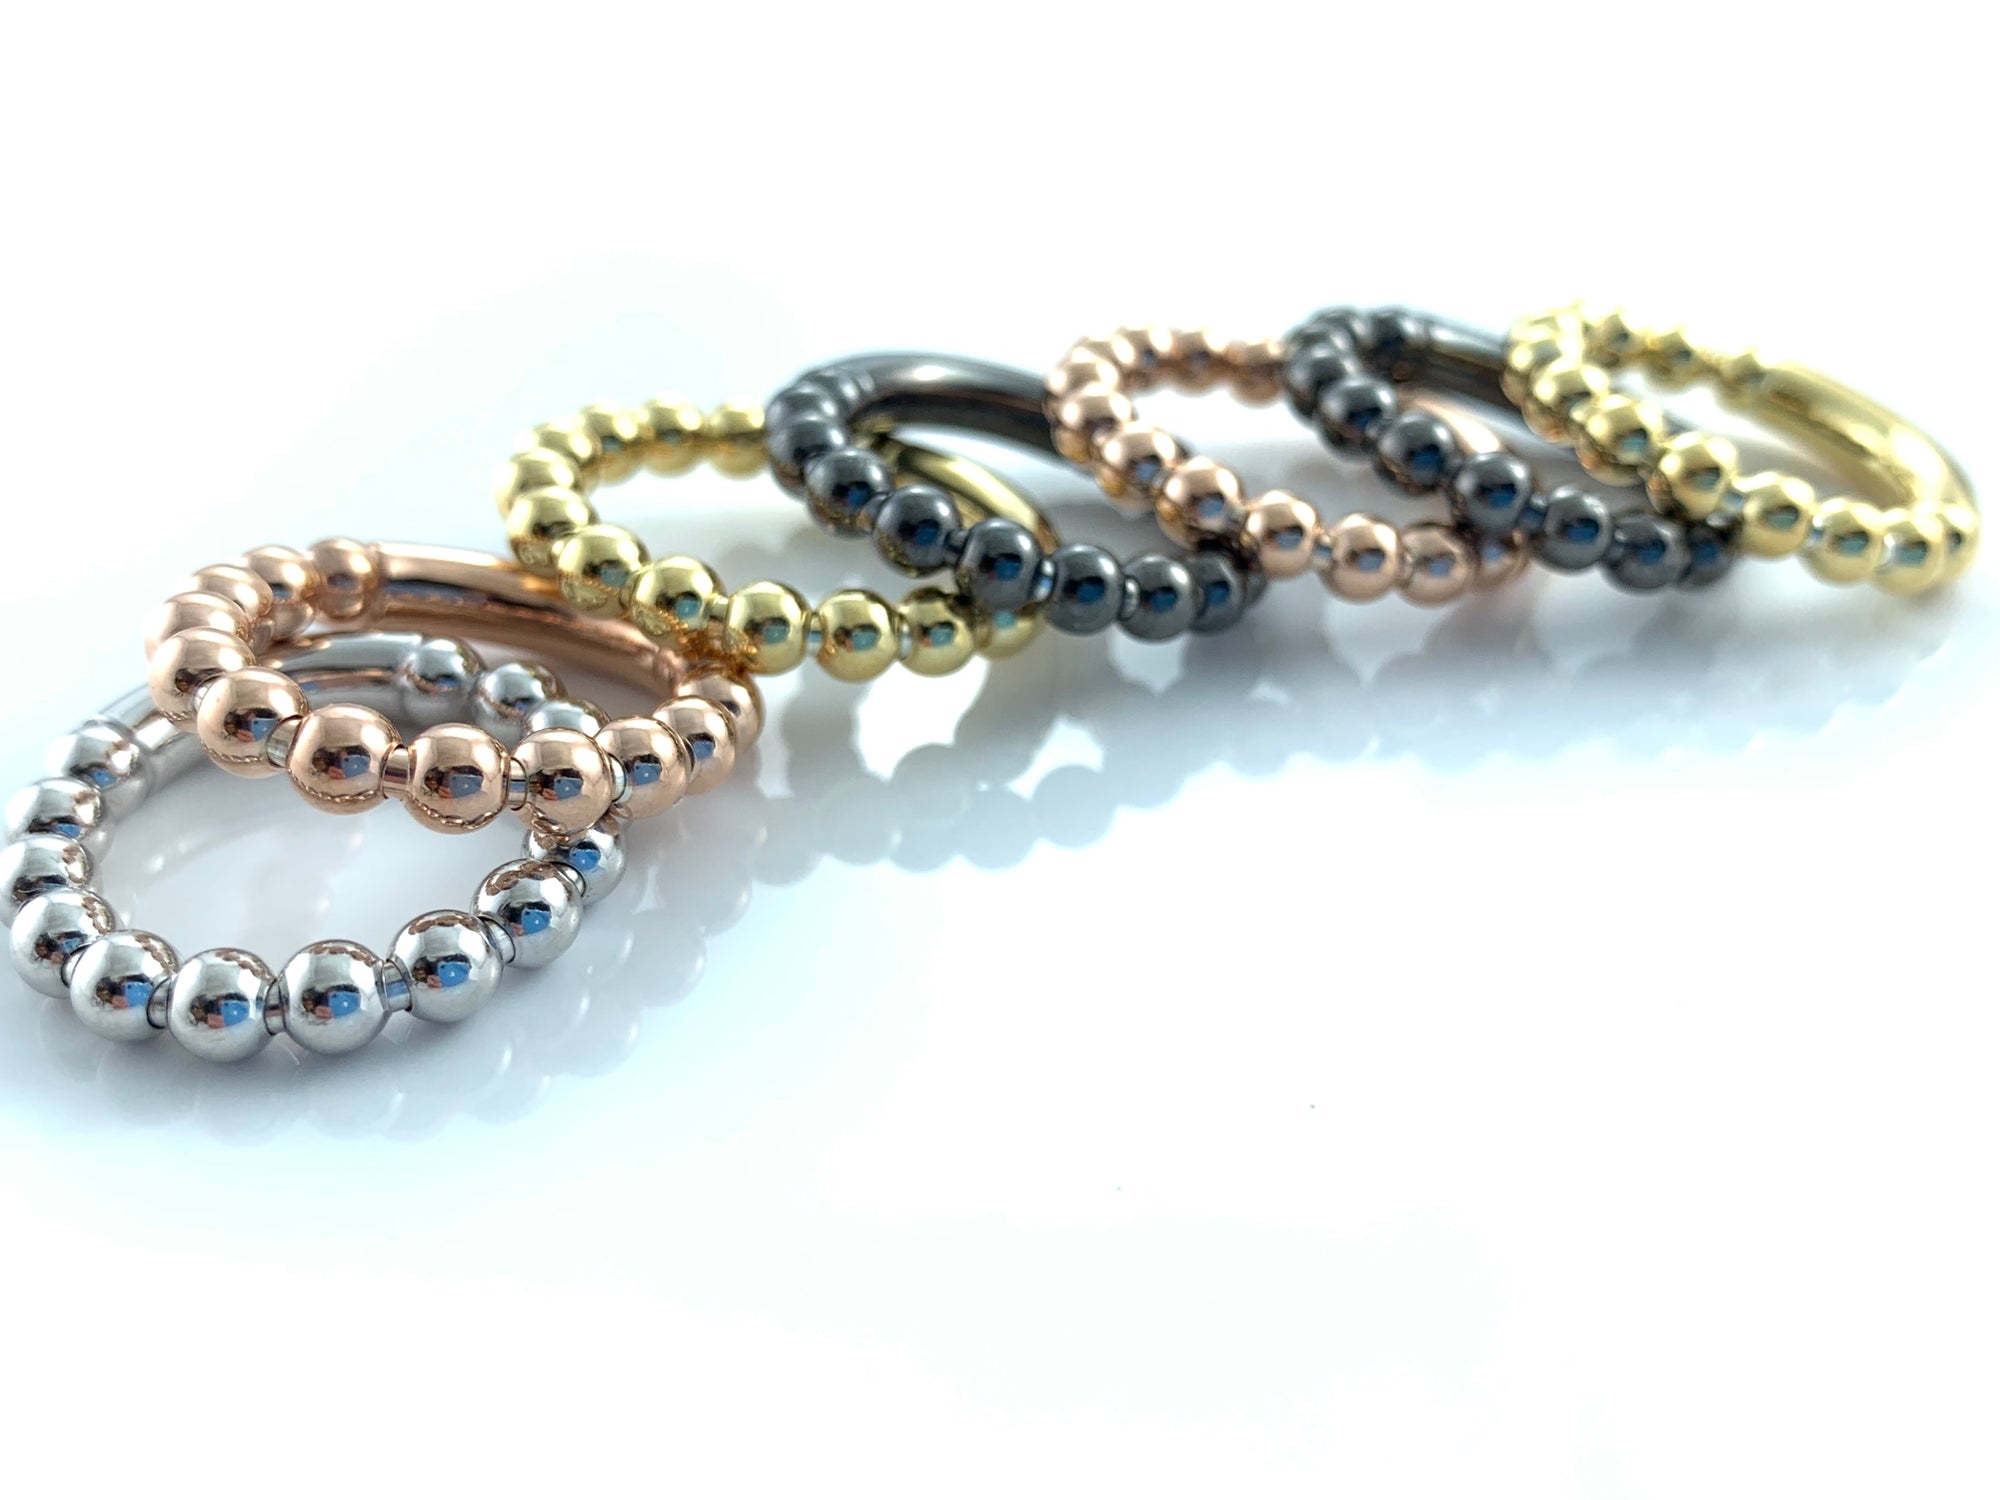 Dehnbarer 925 Silber Ring mit Kugel-Design - In Silber, Rosé, Gold und Schwarz